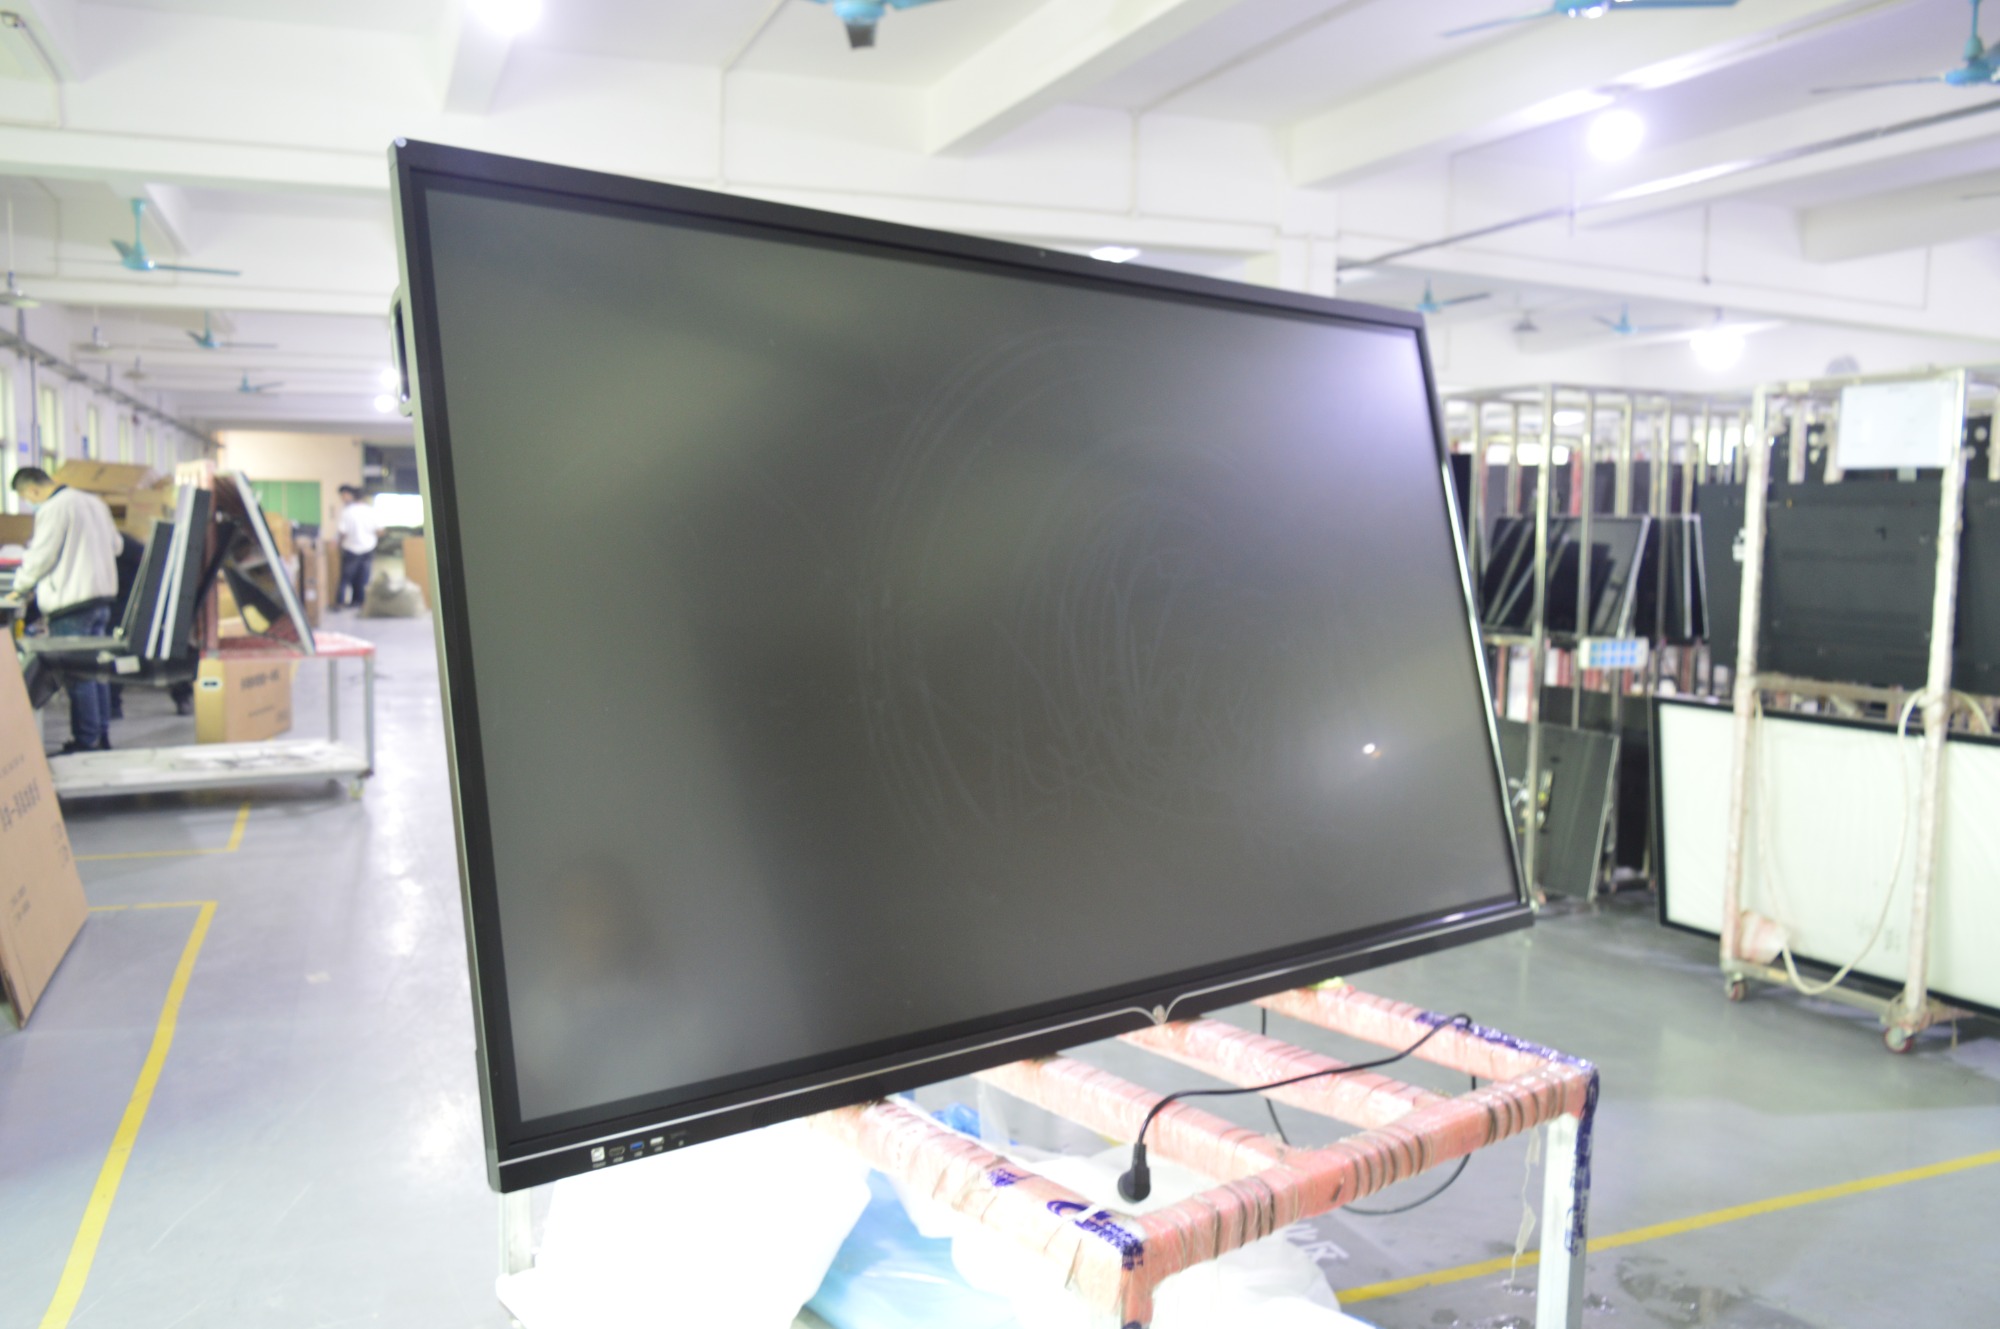 Das interaktive 75-Zoll-Whiteboard mit integrierter Kamera des philippinischen Kunden wird vor dem Versand getestet